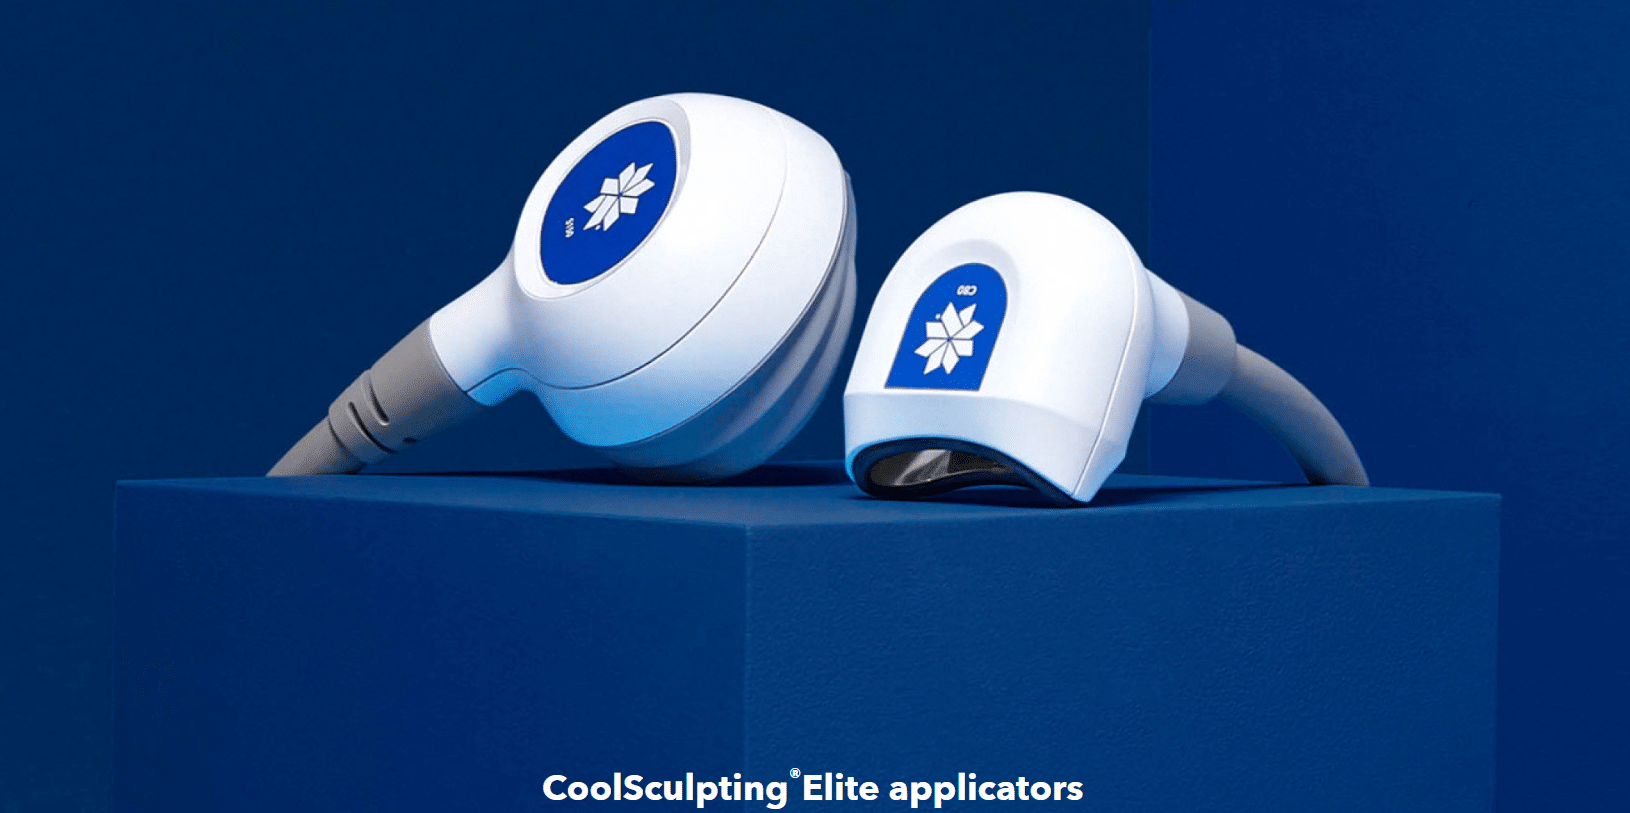 CoolSculpting Elite applicators